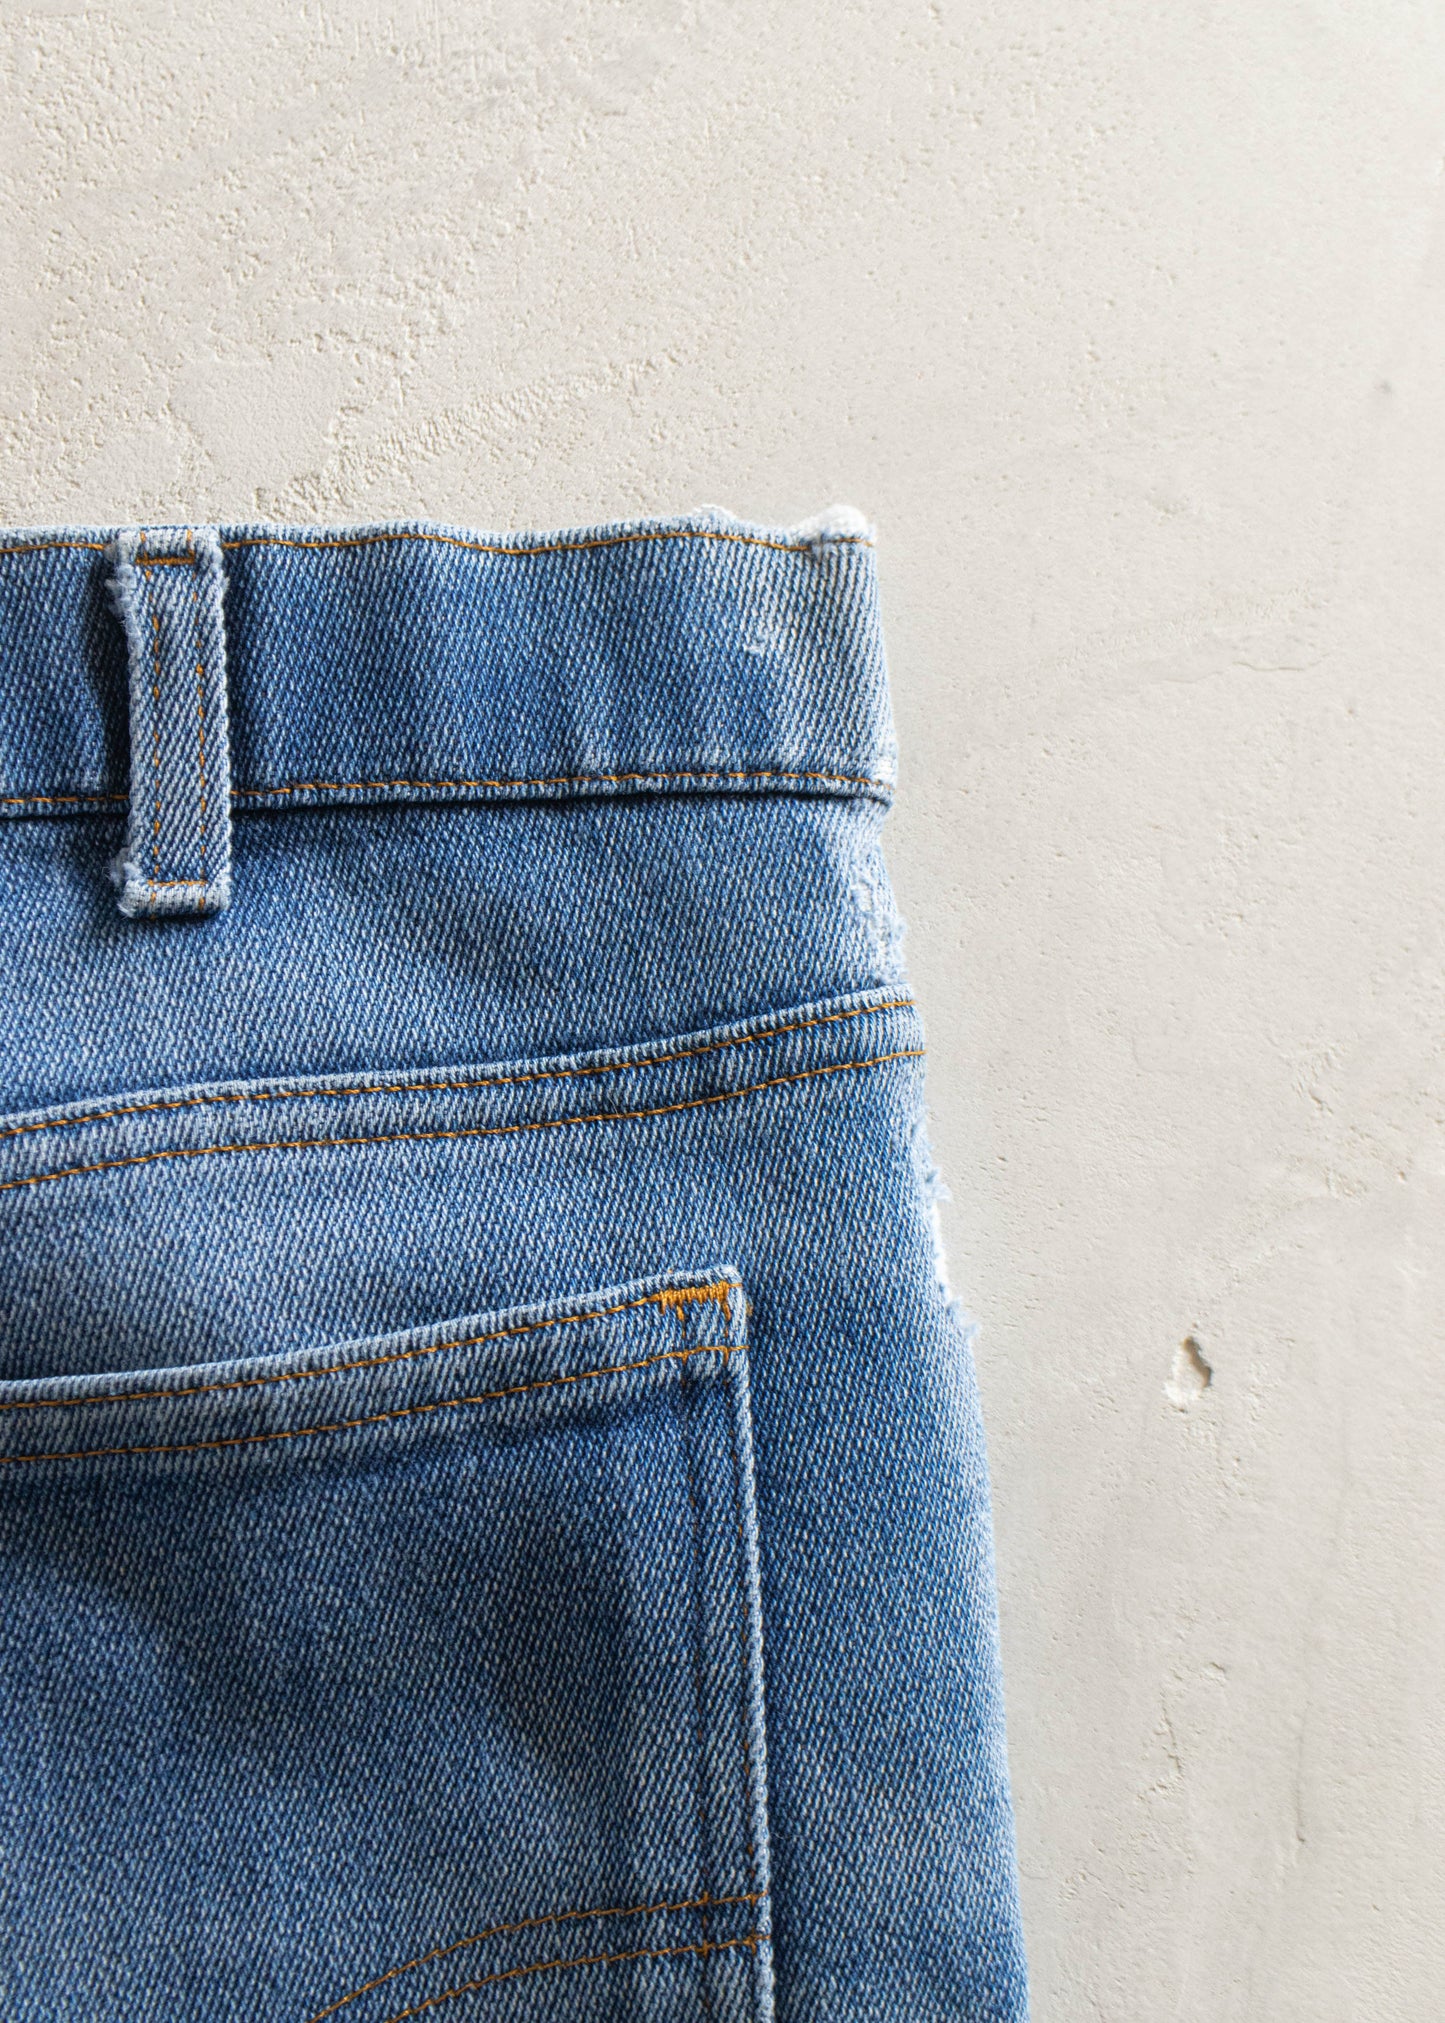 Vintage 1980s Levi's Midwash Jeans Size Women's 34 Men's 36